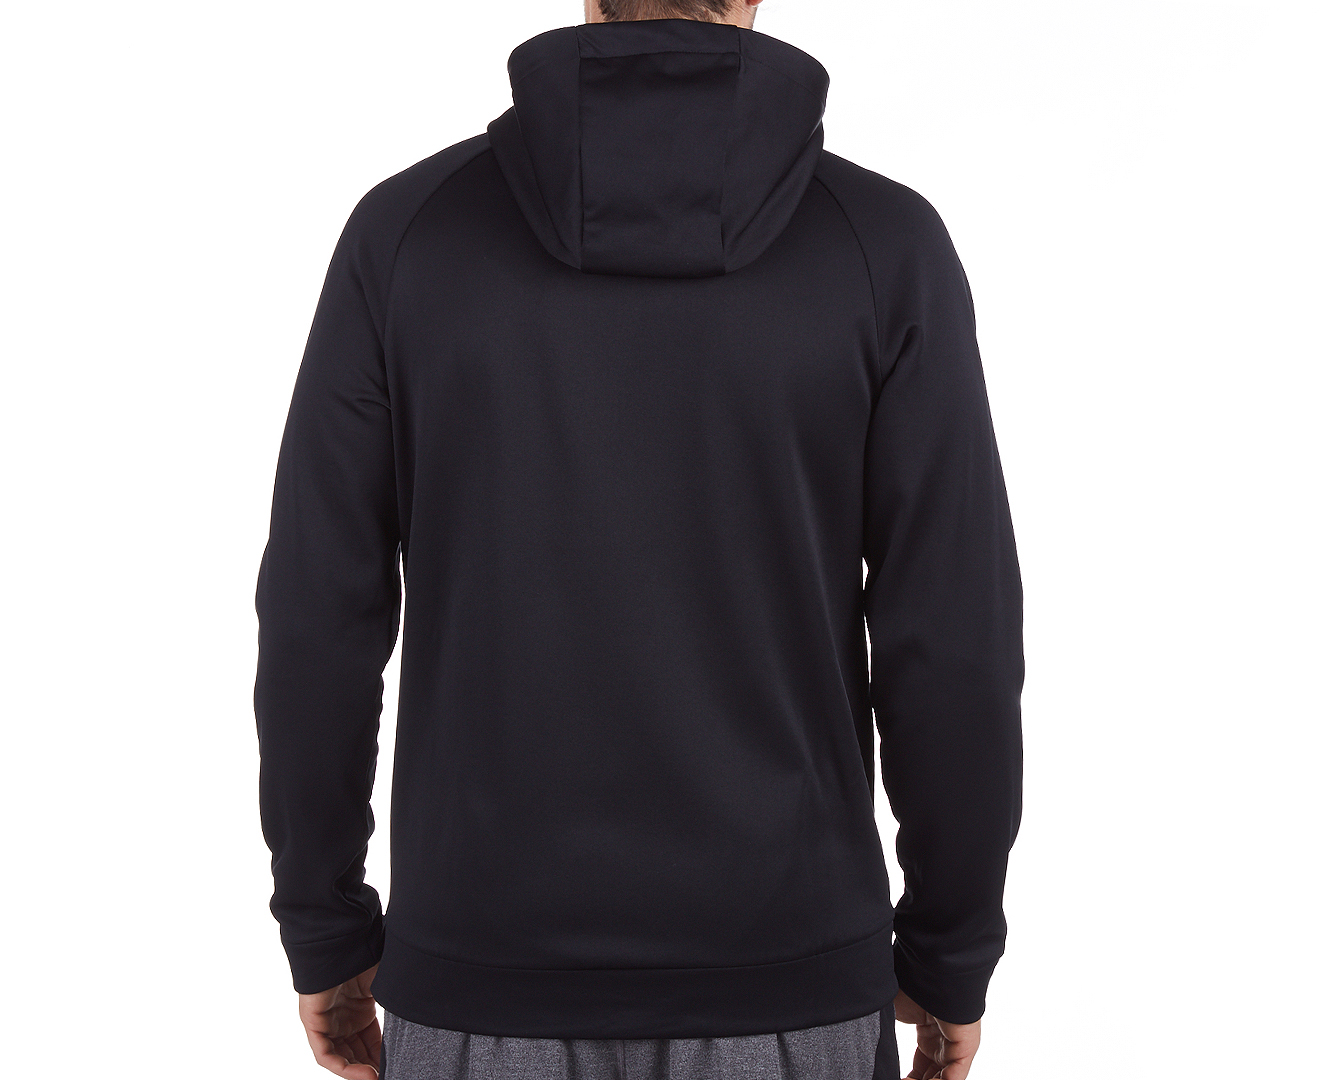 Nike Men's Therma Full Zip Hoodie - Black/Dark Grey | Catch.co.nz